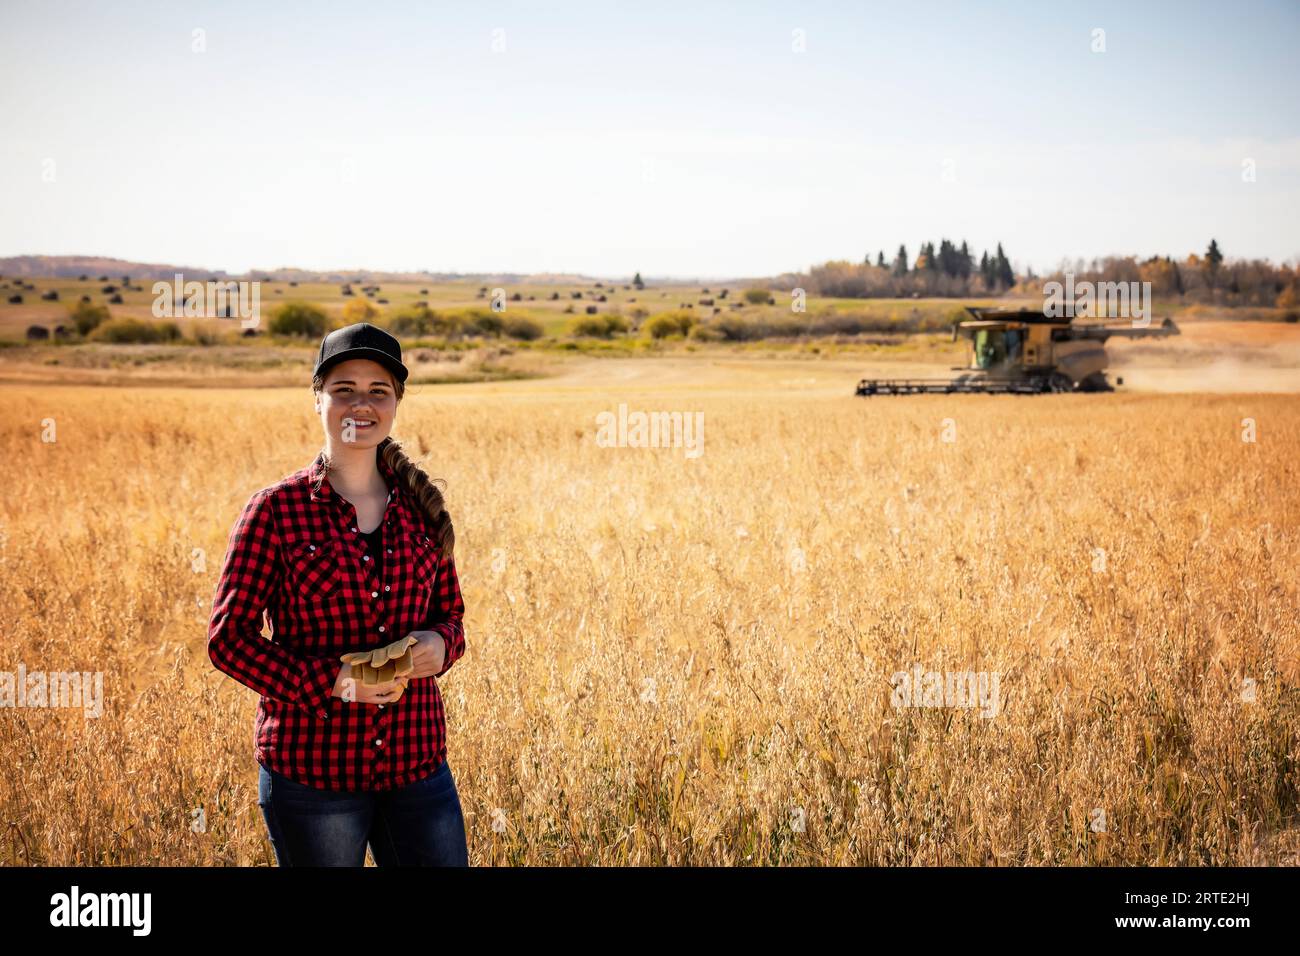 Ritratto di una giovane donna agricola in piedi in un campo di grano misto durante il raccolto, mentre una mietitrebbia lavora sullo sfondo Foto Stock